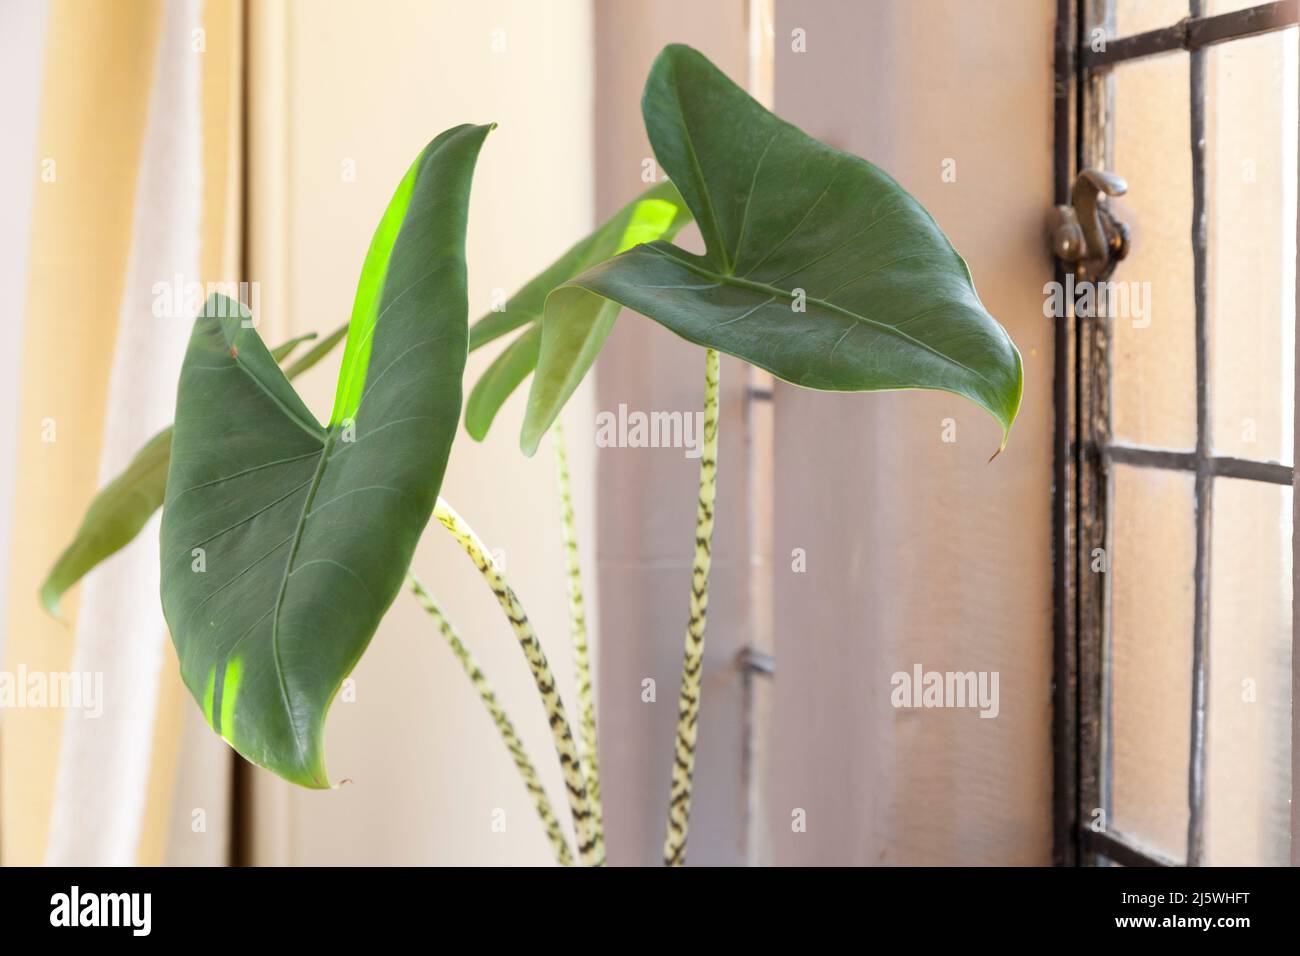 Pfeilförmige Blätter Stockfotos und -bilder Kaufen - Alamy